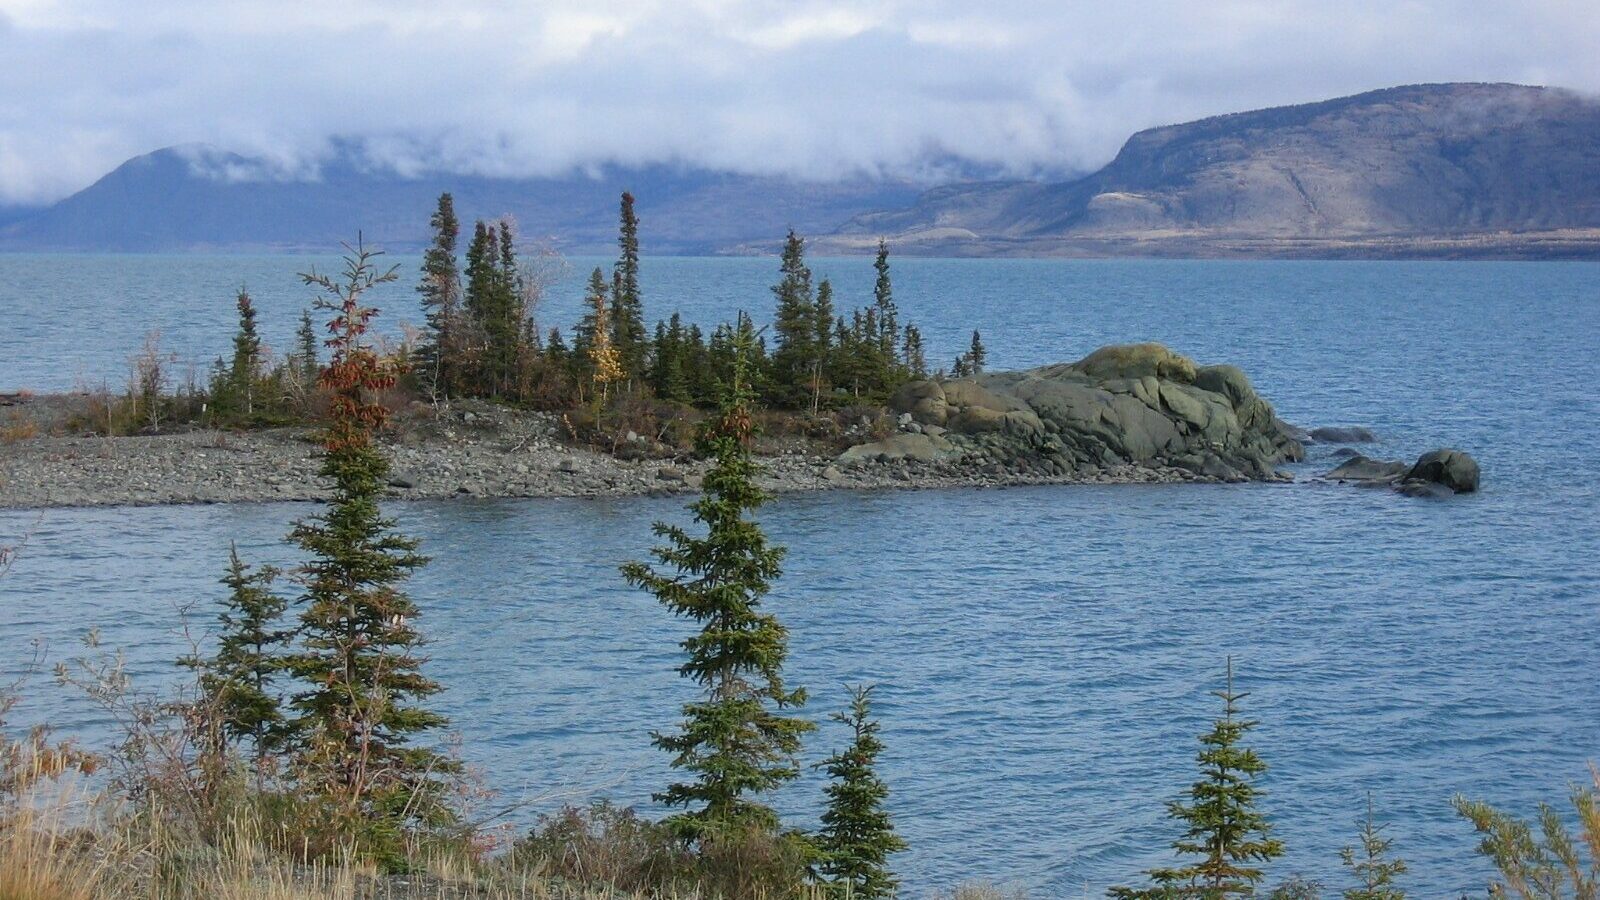 Kluane Lake, Yukon Territory, Canada. Wikimedia: https://commons.wikimedia.org/wiki/File:Kluane_Lake_YT_2005.jpg